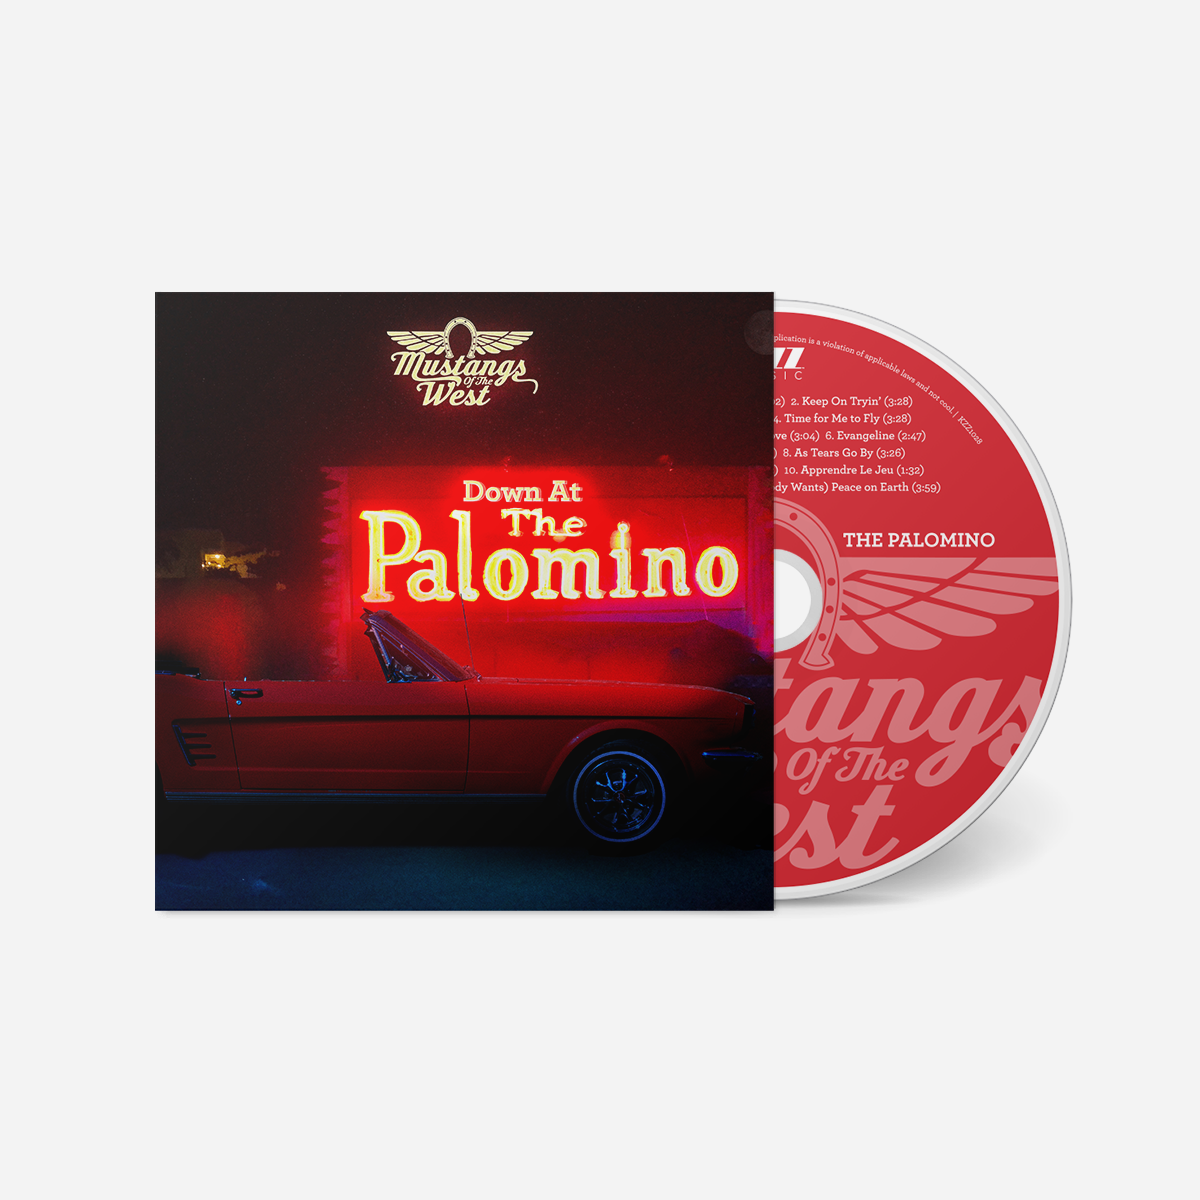 Down at the Palomino - CD